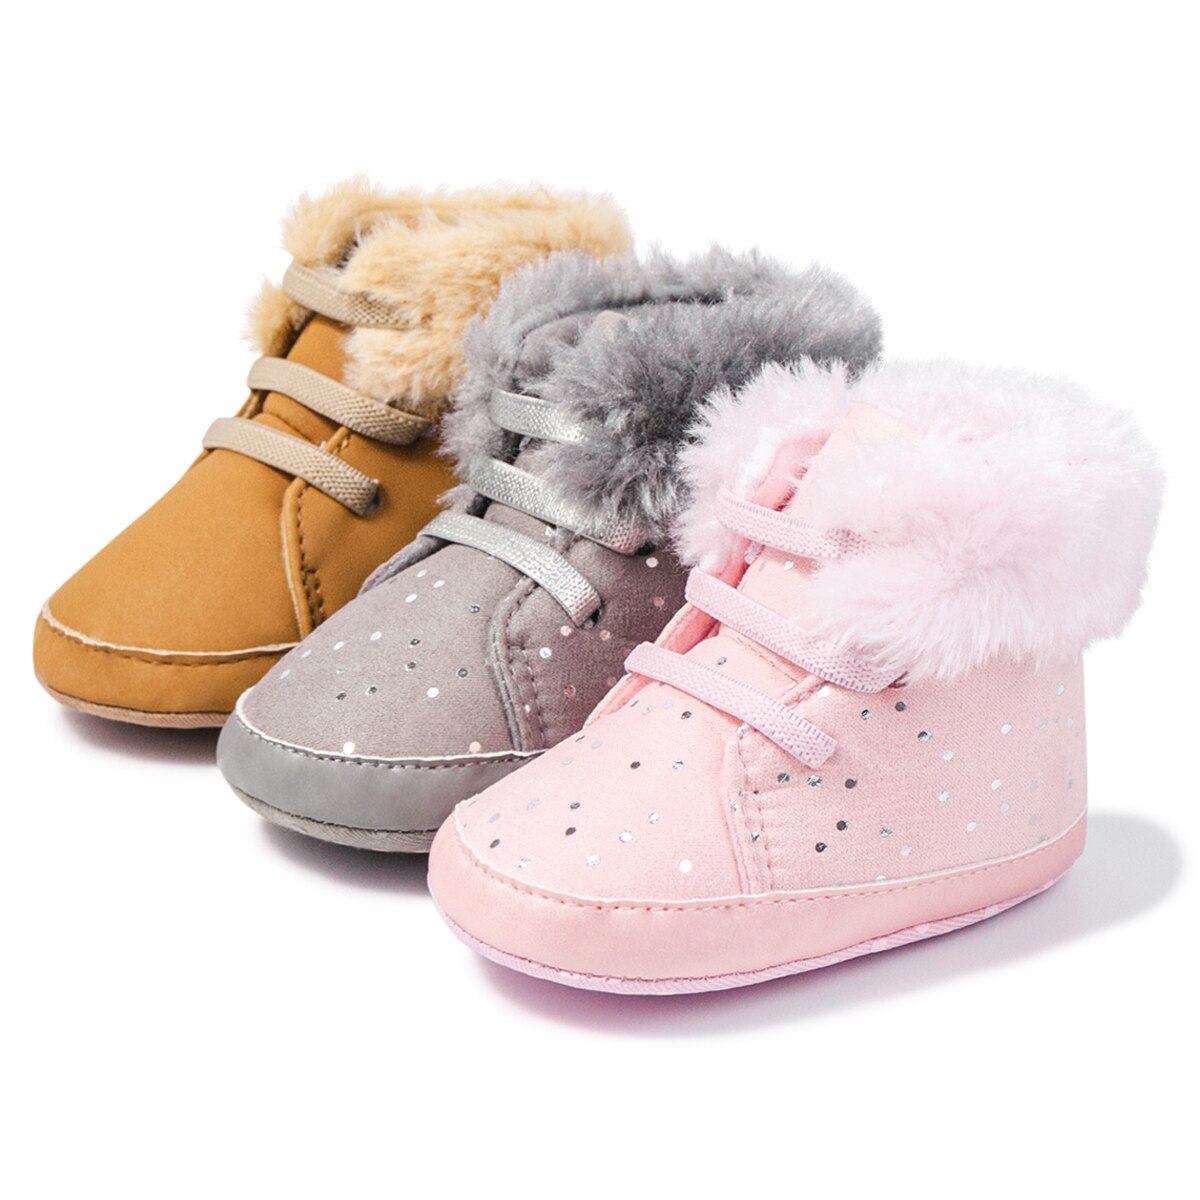 Botas de invierno para bebé recién nacido, zapatos para niño pequeño, mantener el calor, botines de campo de nieve, zapatos para primeros pasos